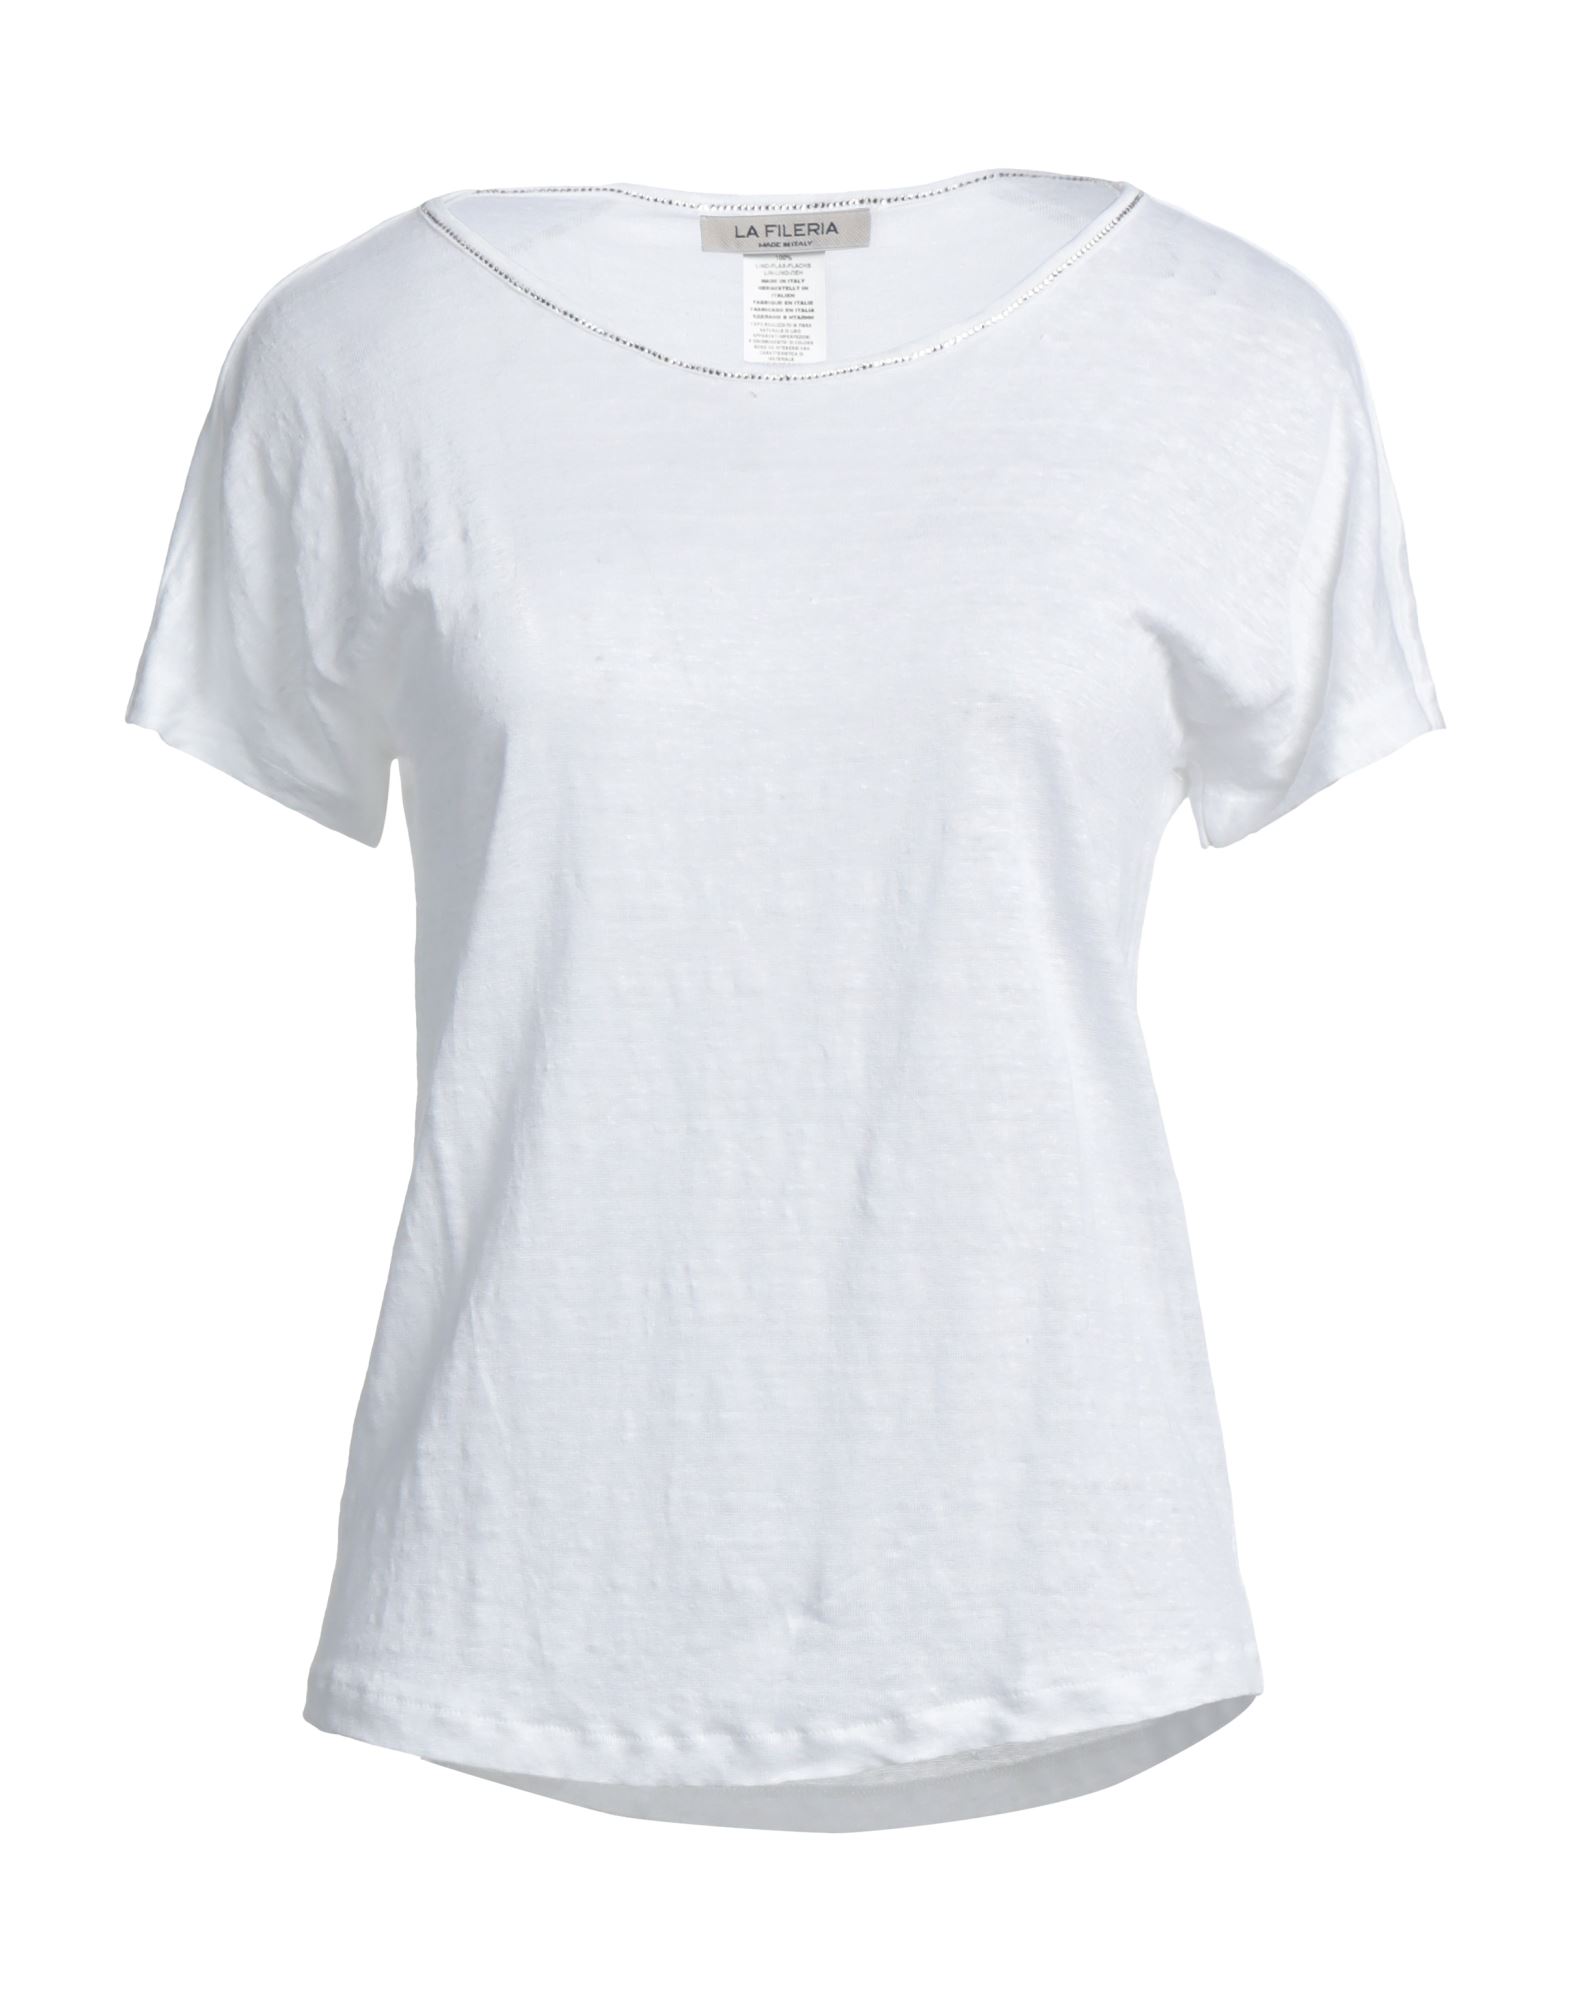 La Fileria T-shirts In White